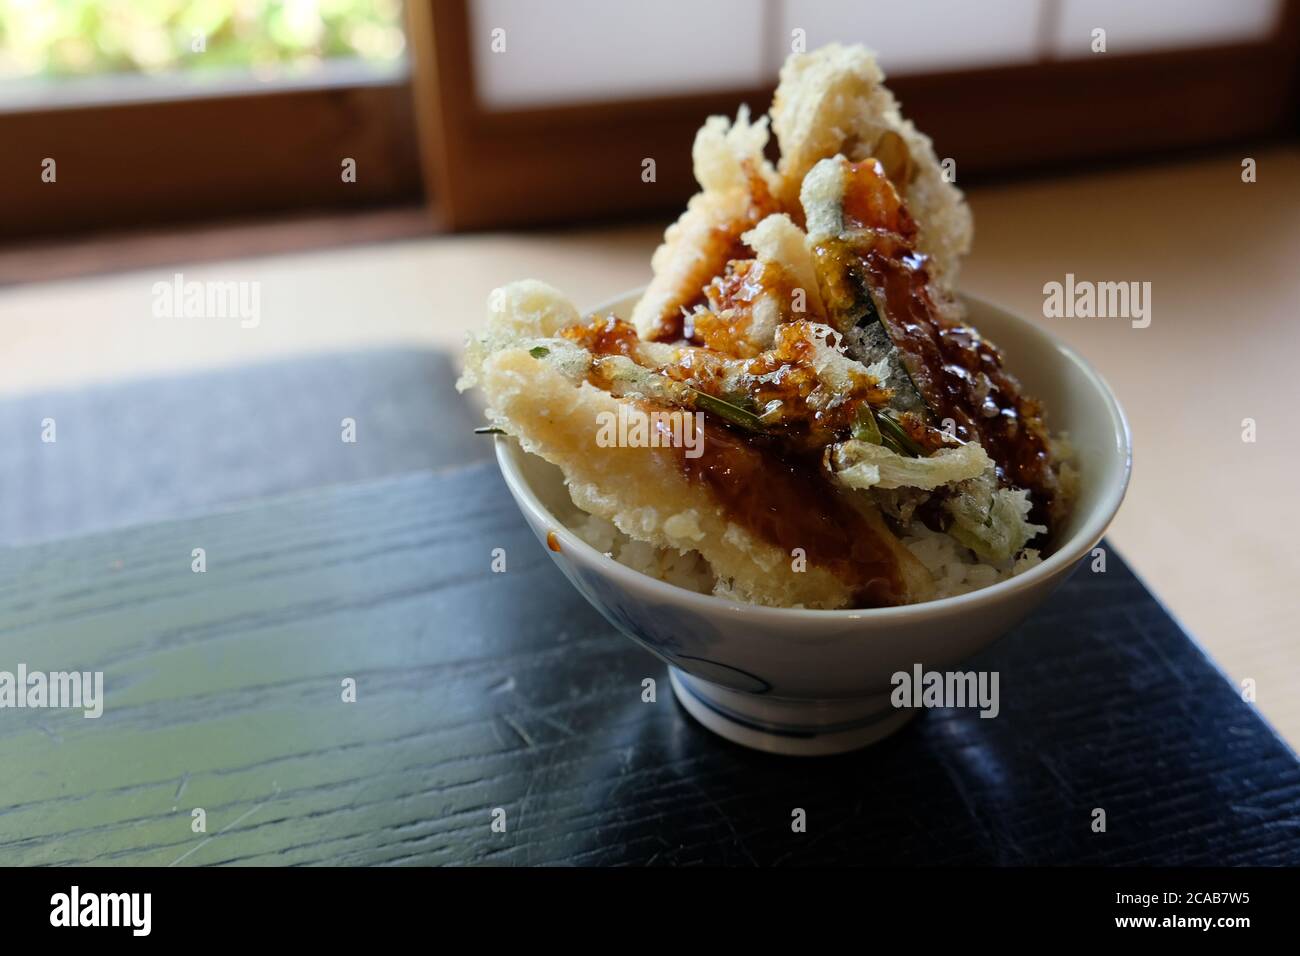 Eine Art Donburi (eine ein-Schüssel-Mahlzeit mit Reis gekrönt mit jedem Fleisch oder Gemüsegericht), Sehne ist knackige Tempura über frisch gedämpften Reis gelegt. Stockfoto